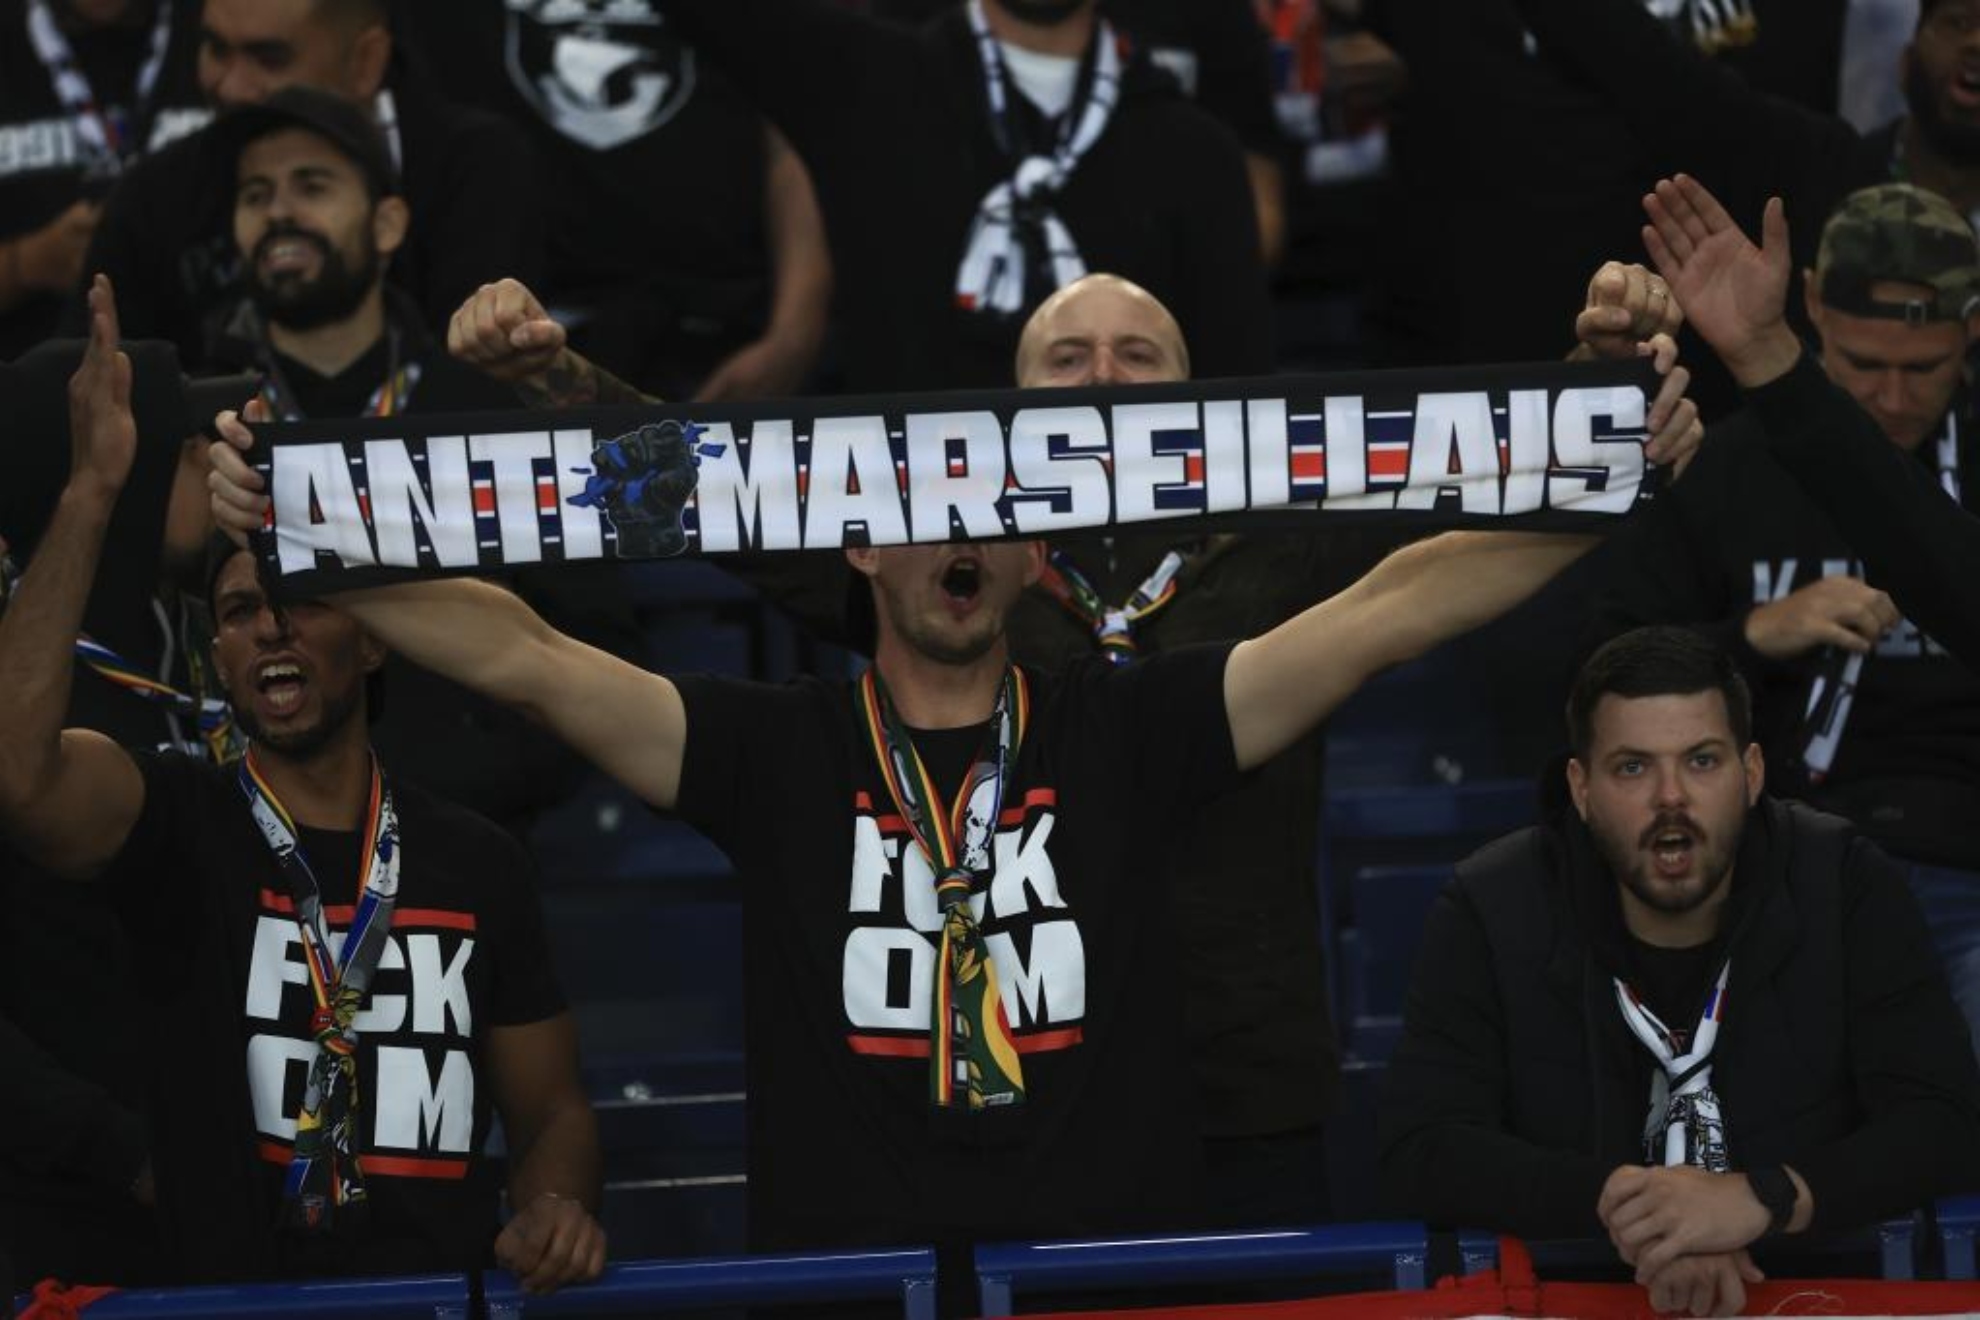 Un aficionado del PSG, durante el partido con una bufanda 'anti-Marsella'.